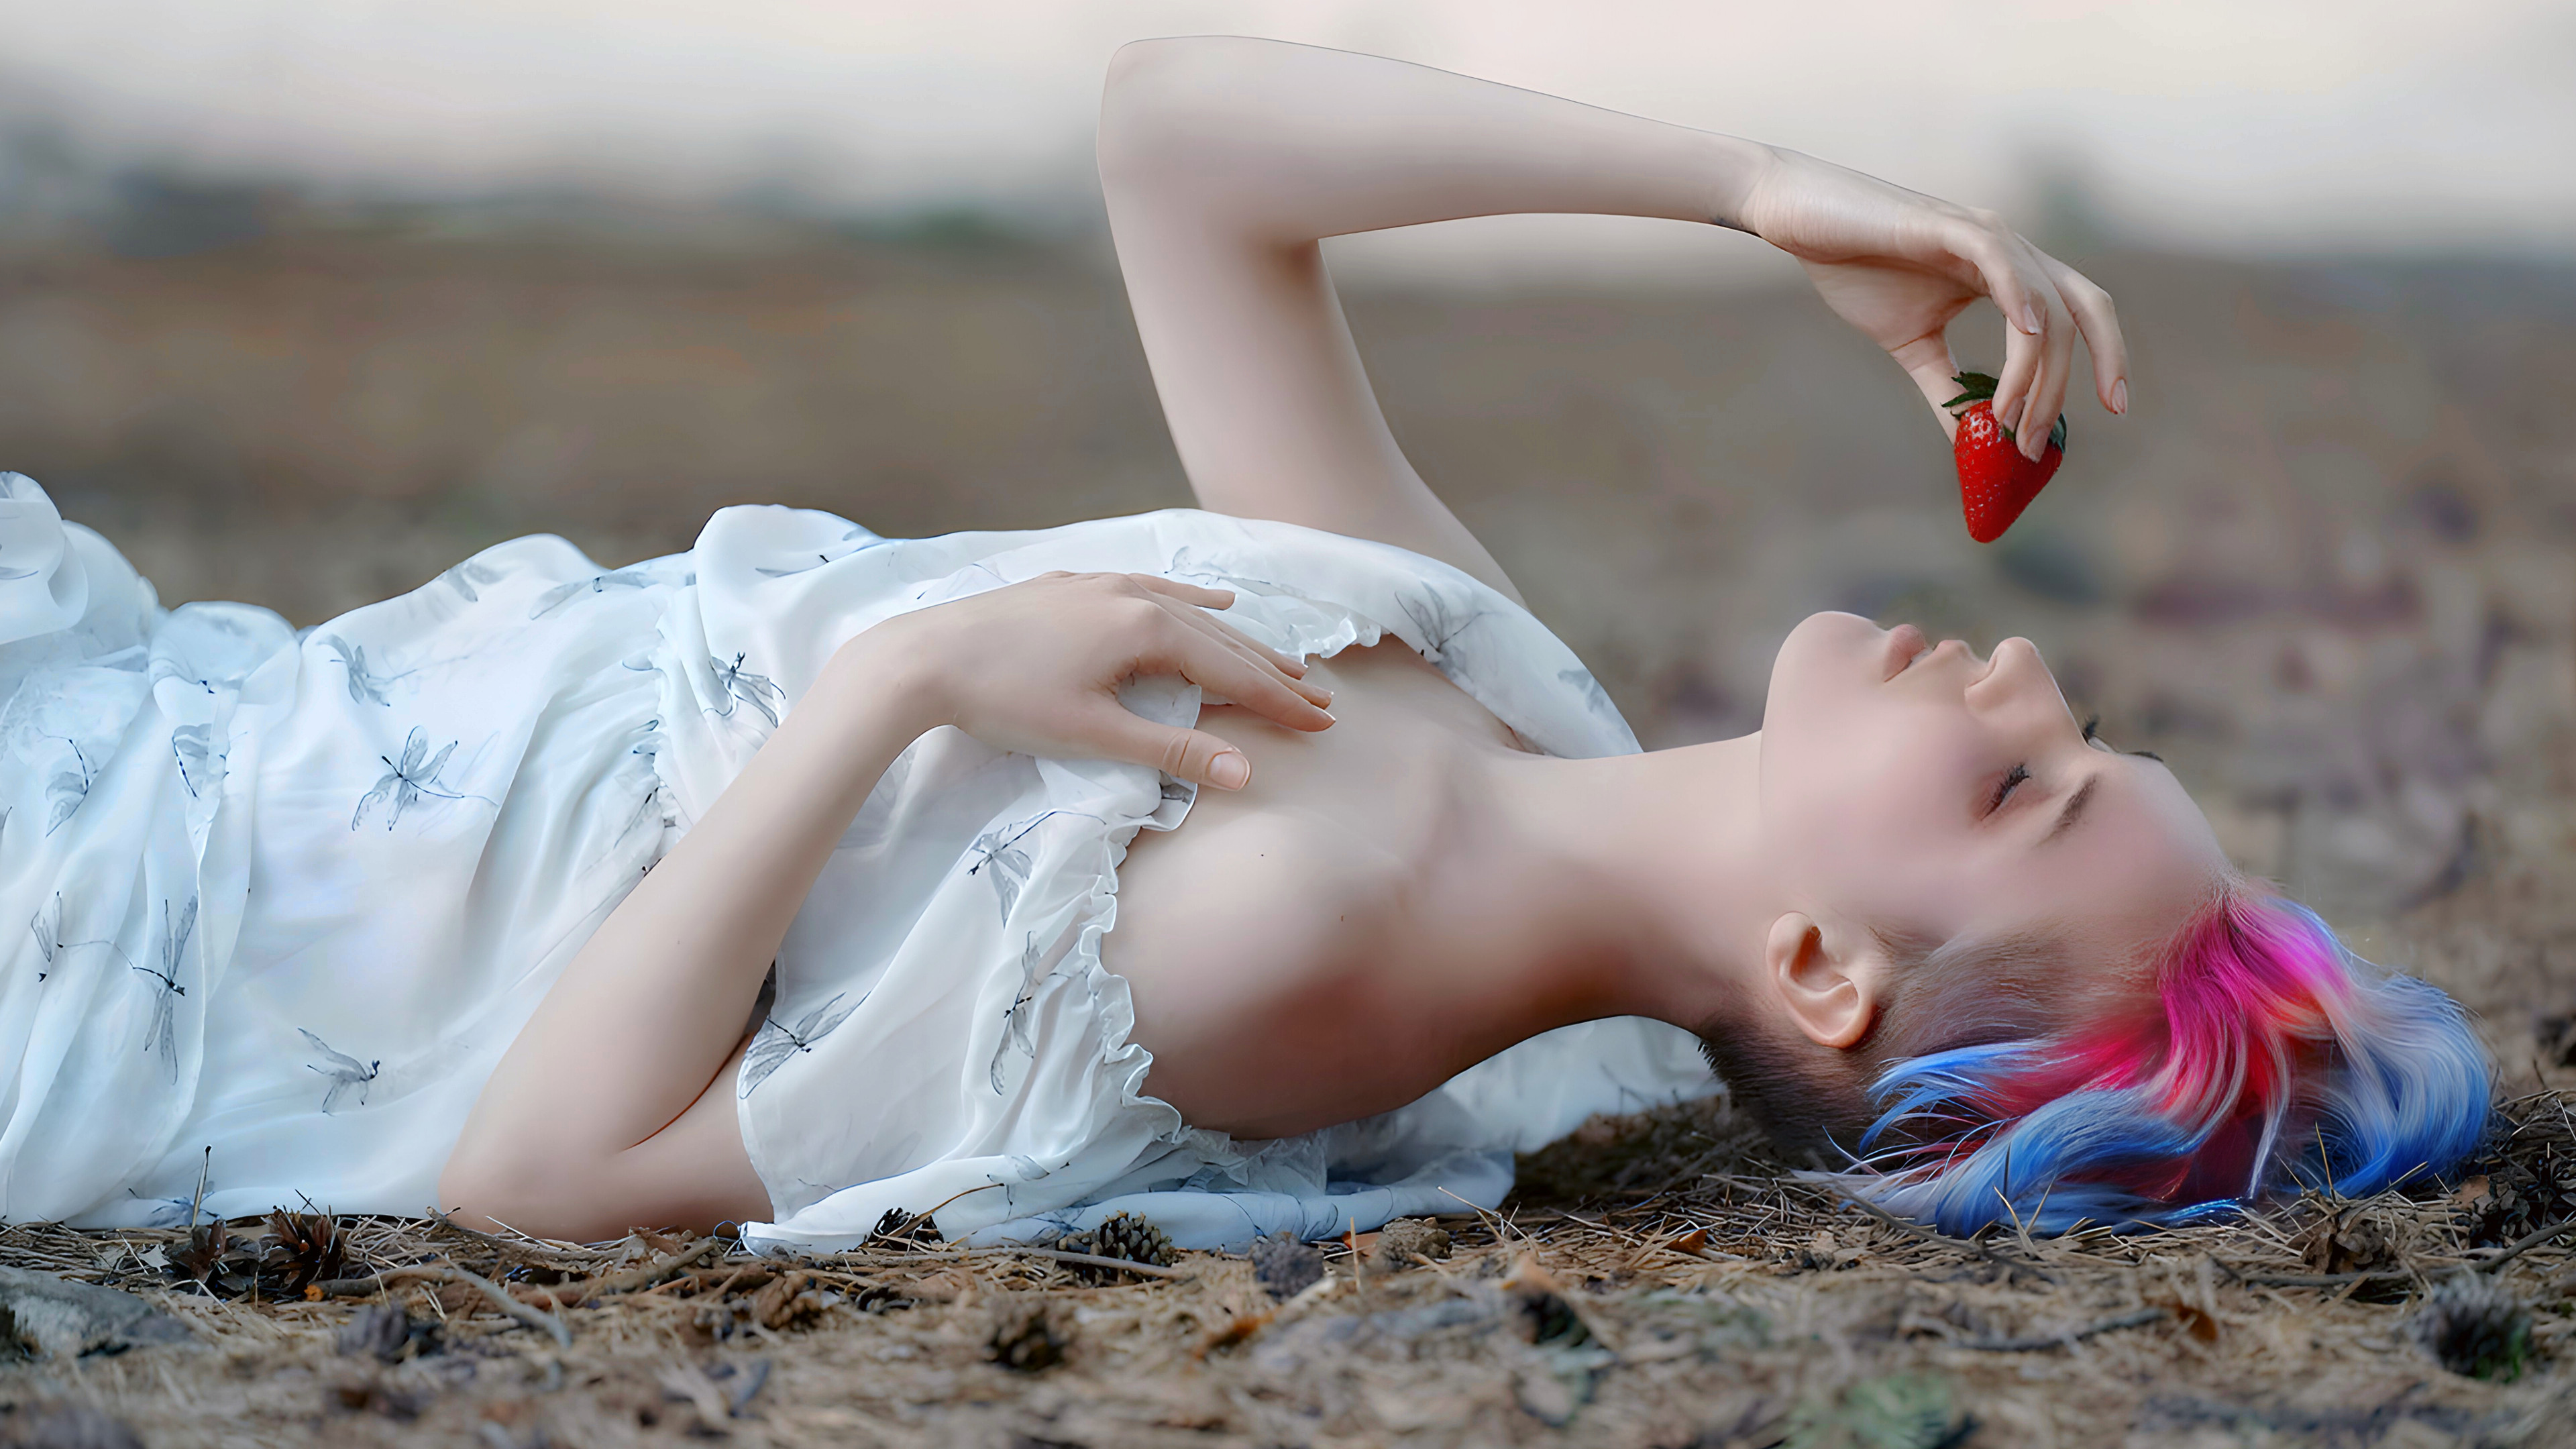 Девушка с клубникой · бесплатная фотография от Fonwall